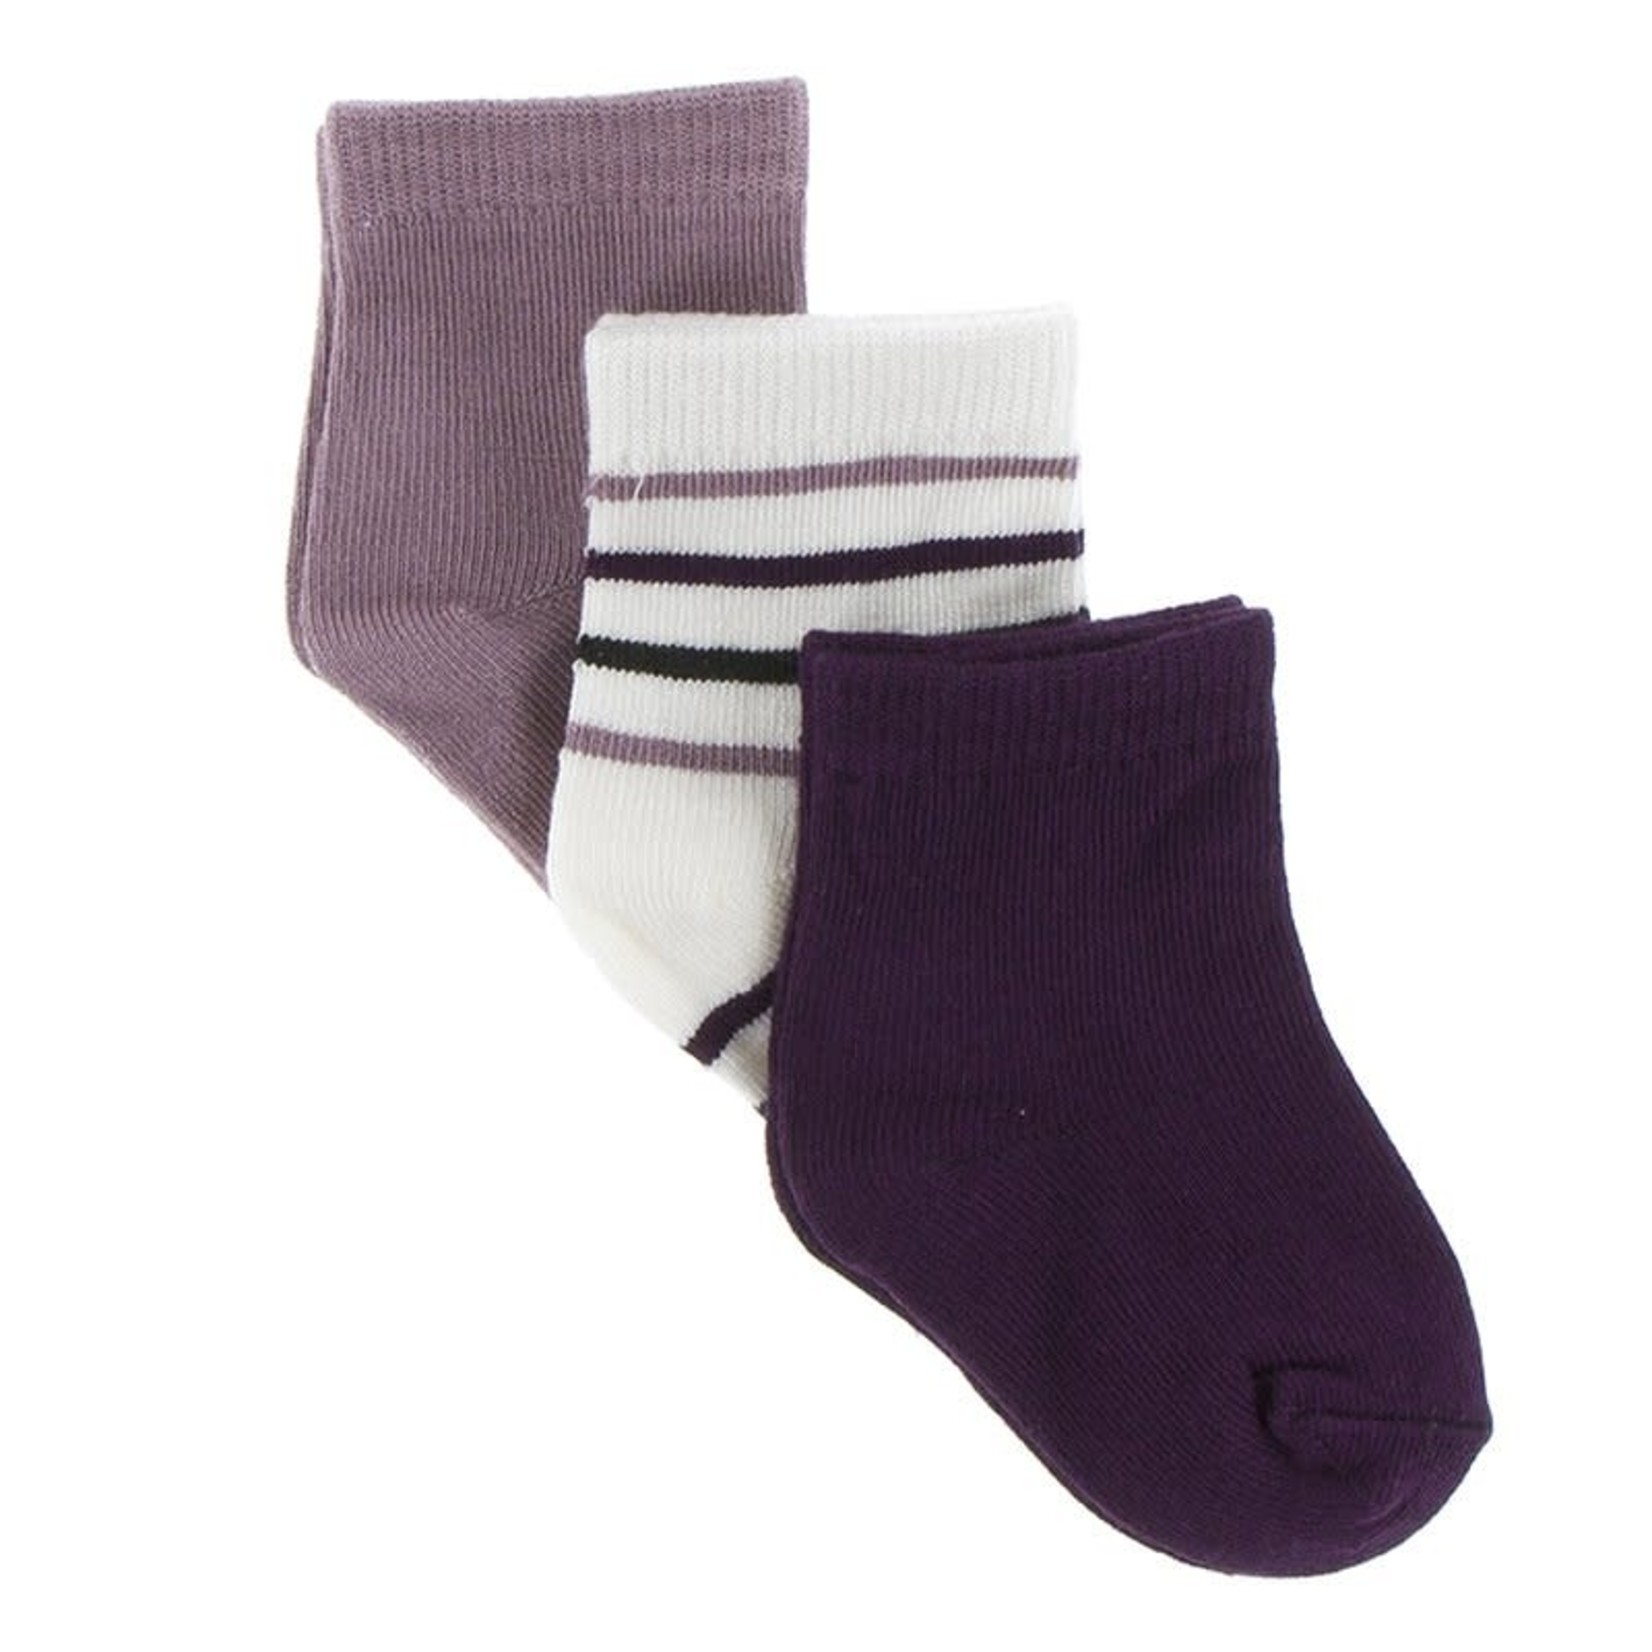 Kickee Pants 3 Pk Socks - Raisin, Tuscan, Stripe and Grapes